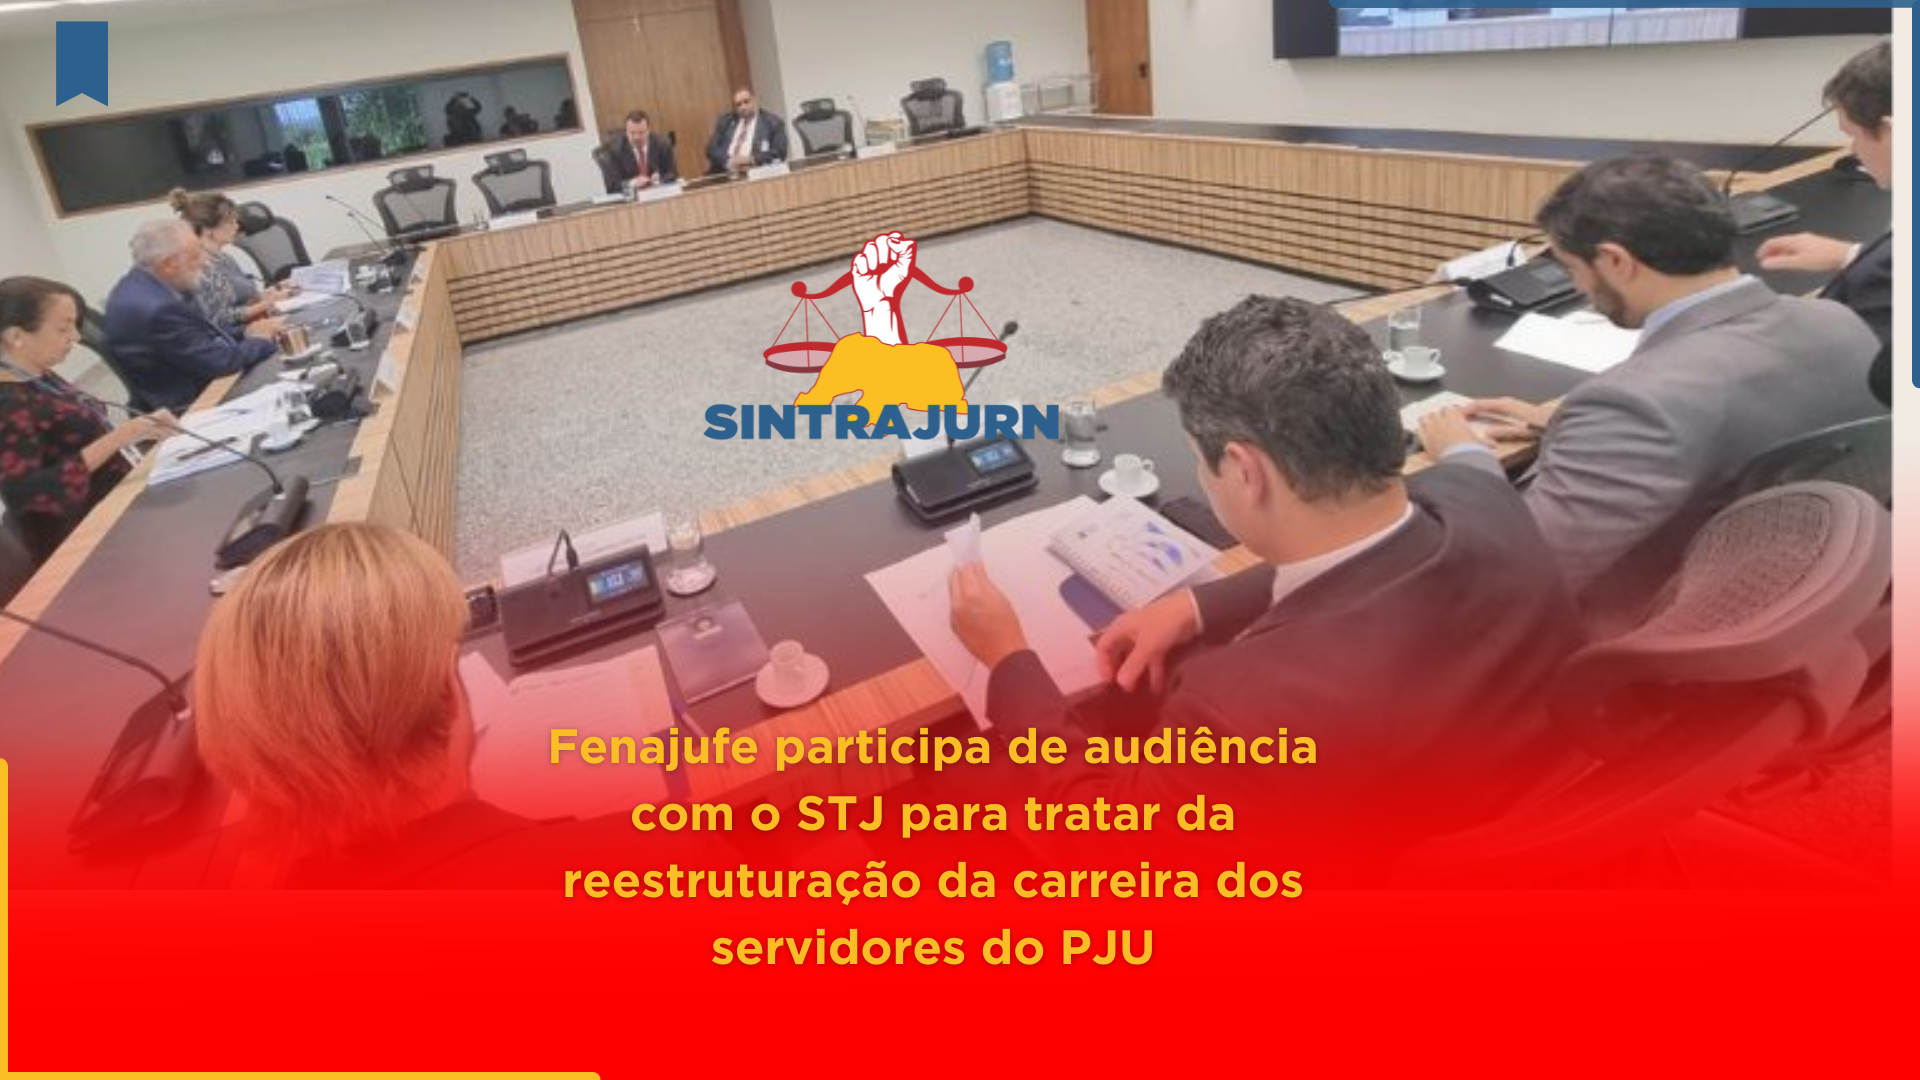 Fenajufe participa de audiência com o STJ para tratar da reestruturação da carreira dos servidores do PJU